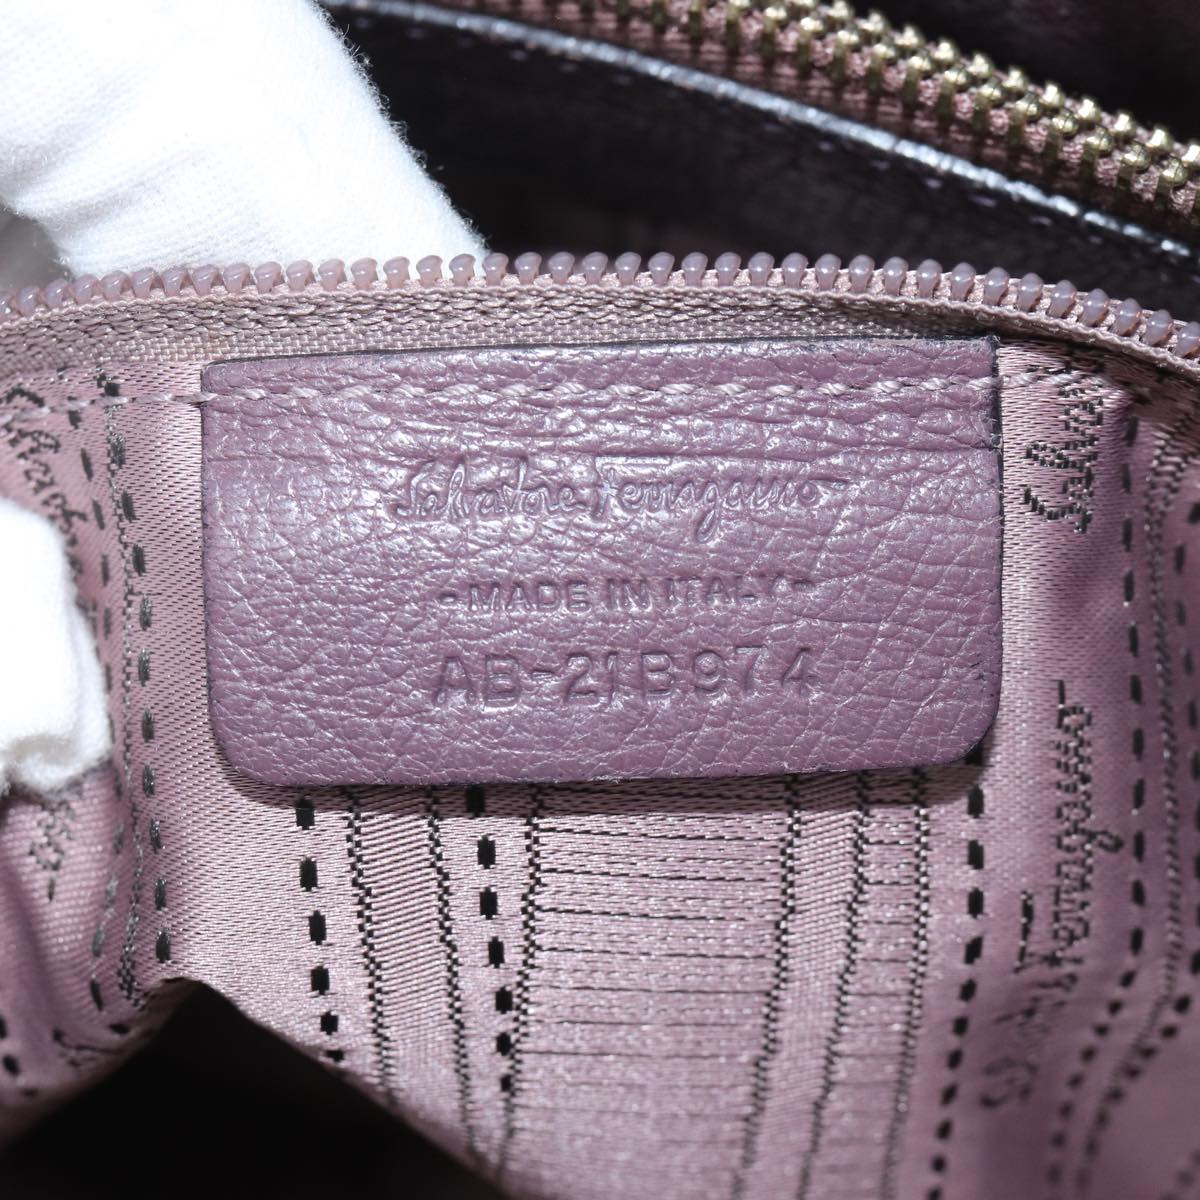 Salvatore Ferragamo Chain Hand Bag Leather Purple Auth mr025